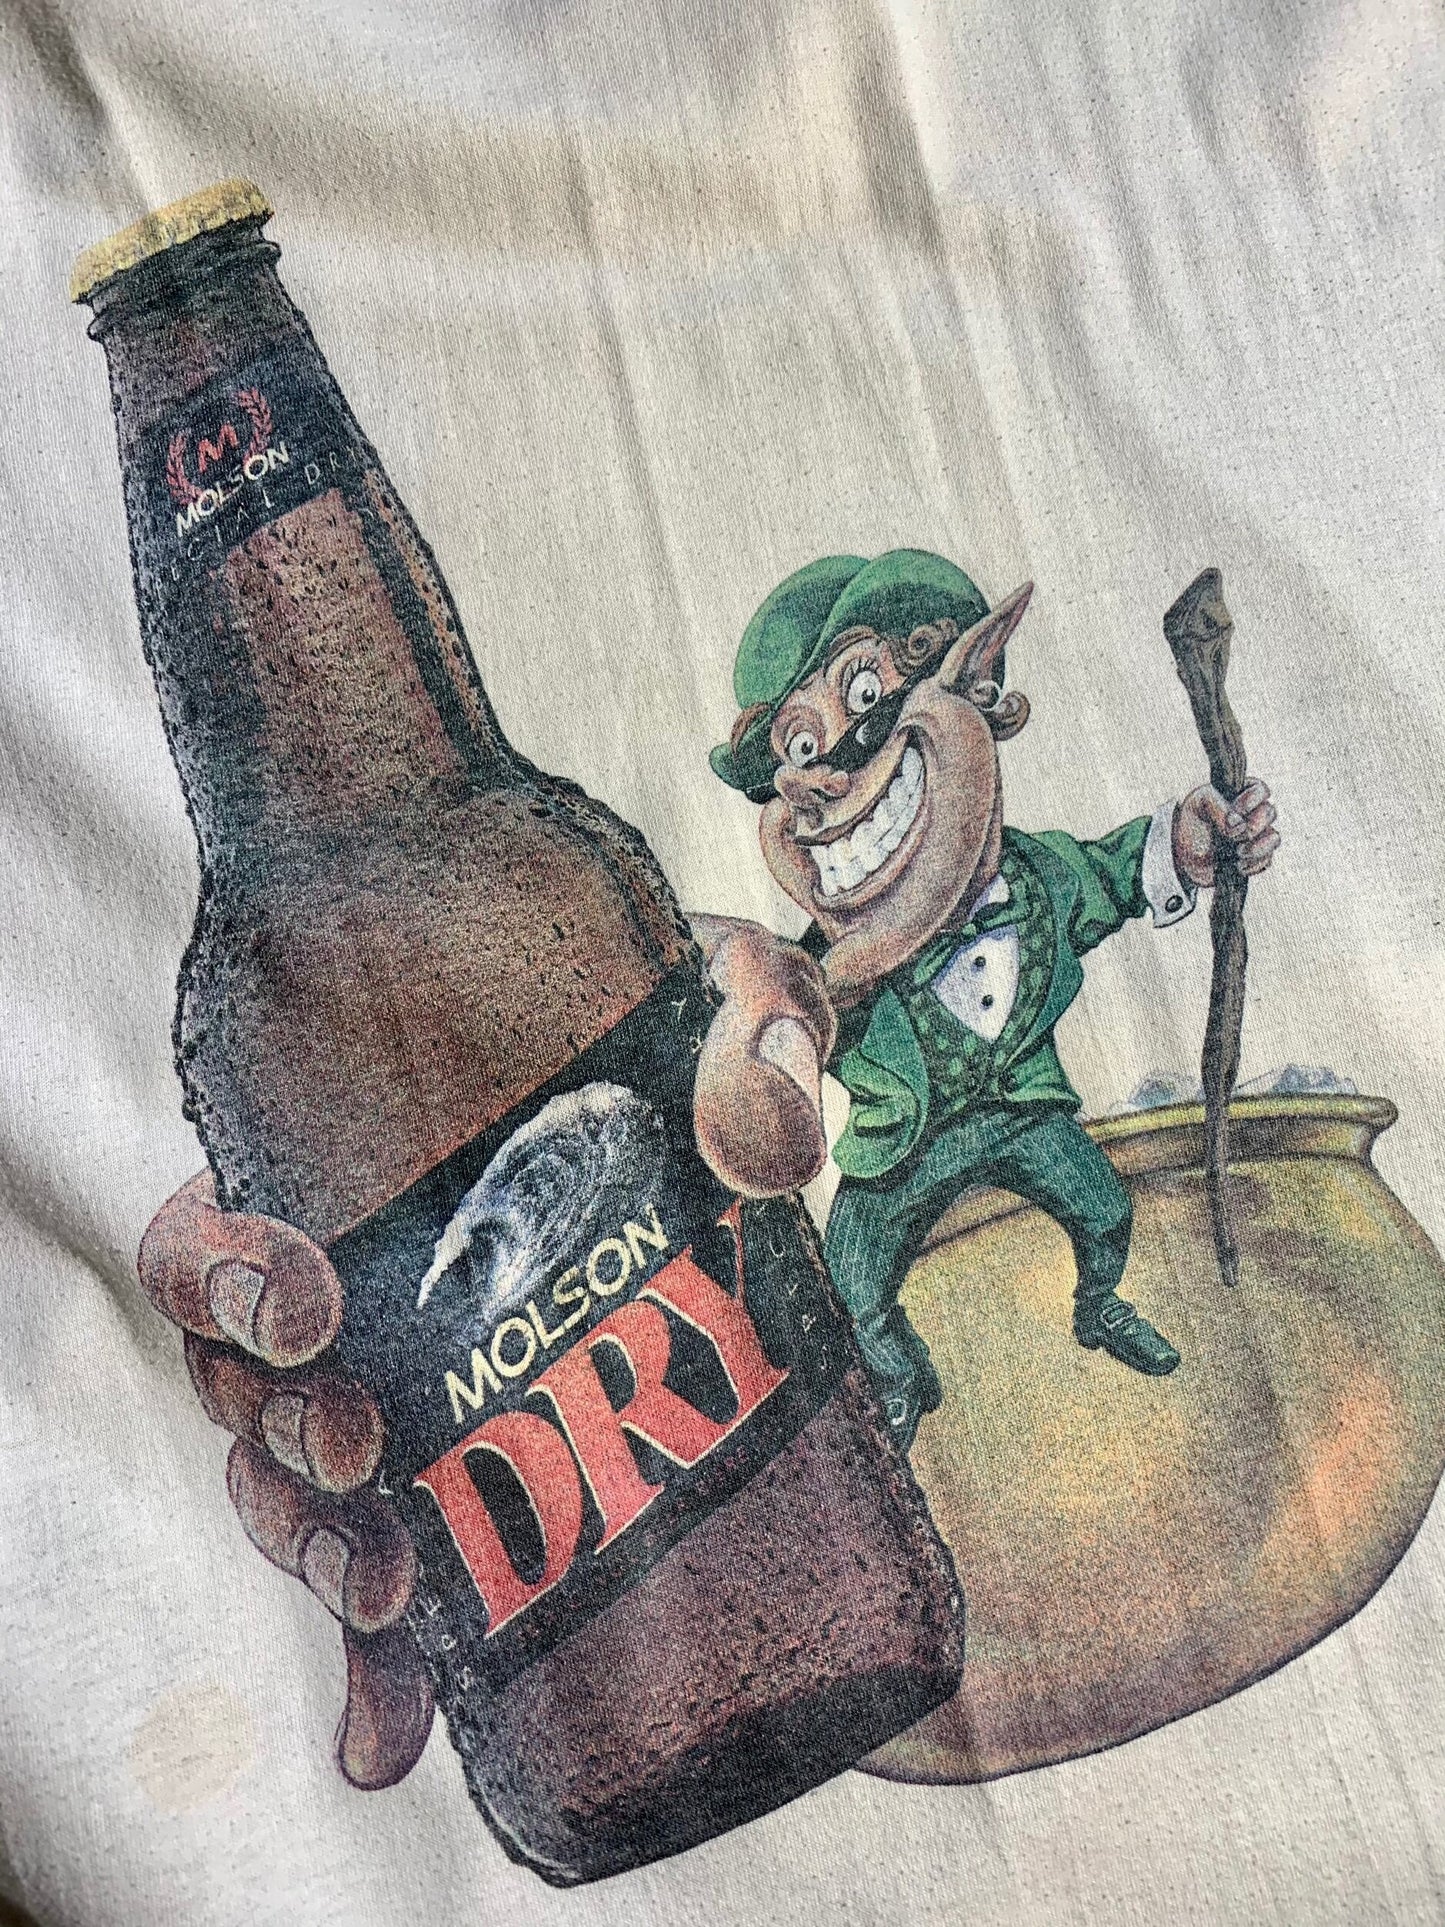 Vintage Molson Dry Pub T-Shirt Leprechaun